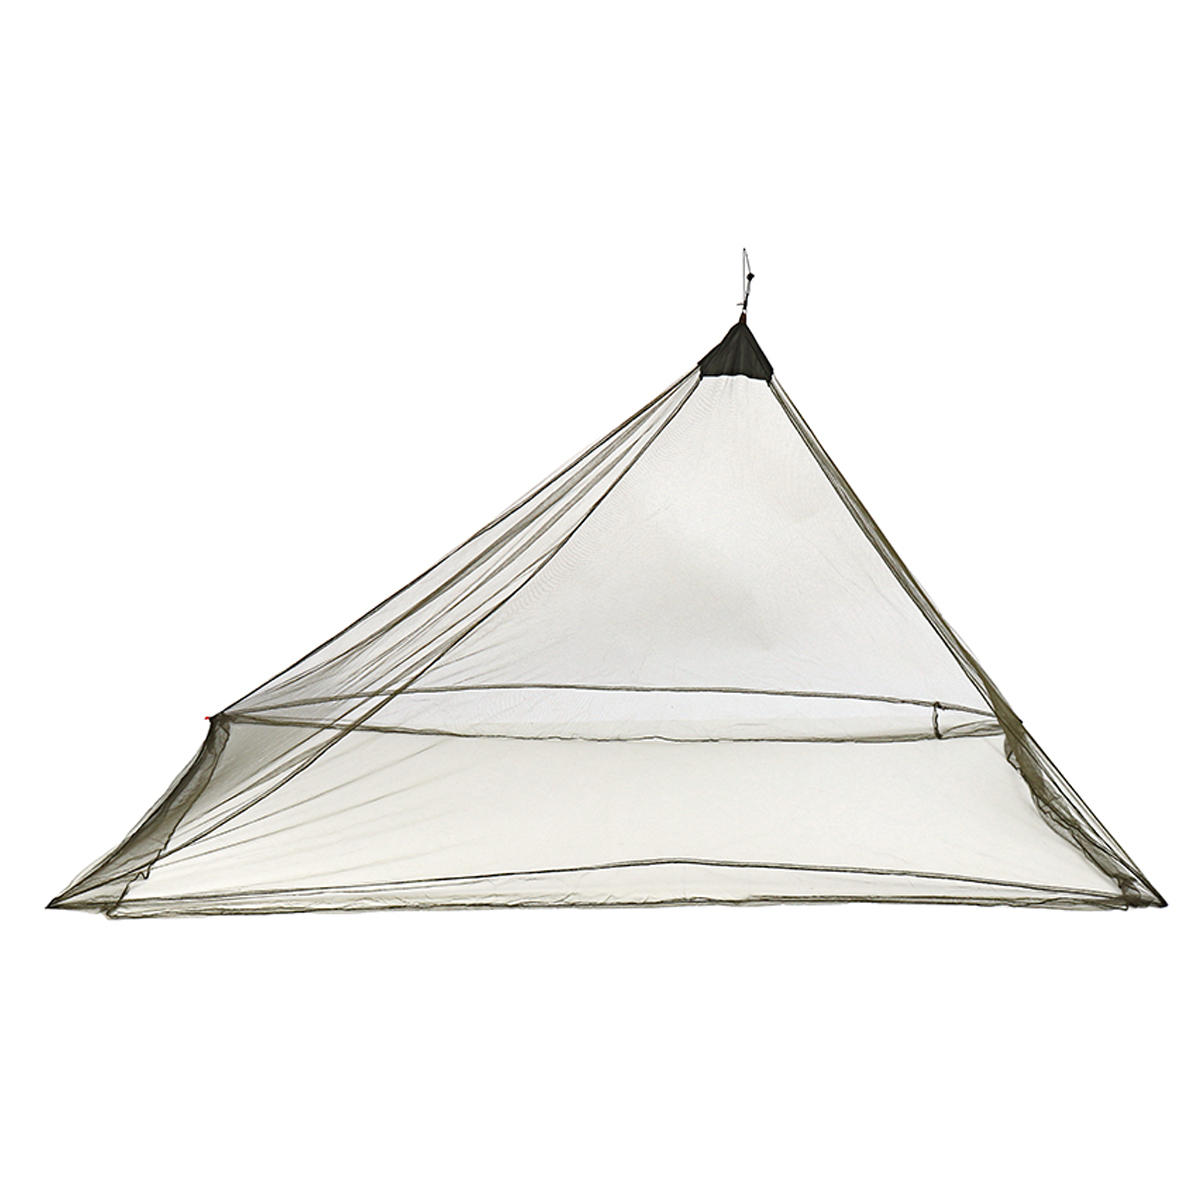 Rete antizanzare da campeggio leggera e portatile, tenda antizanzare all'aperto, copertura antizanzare.